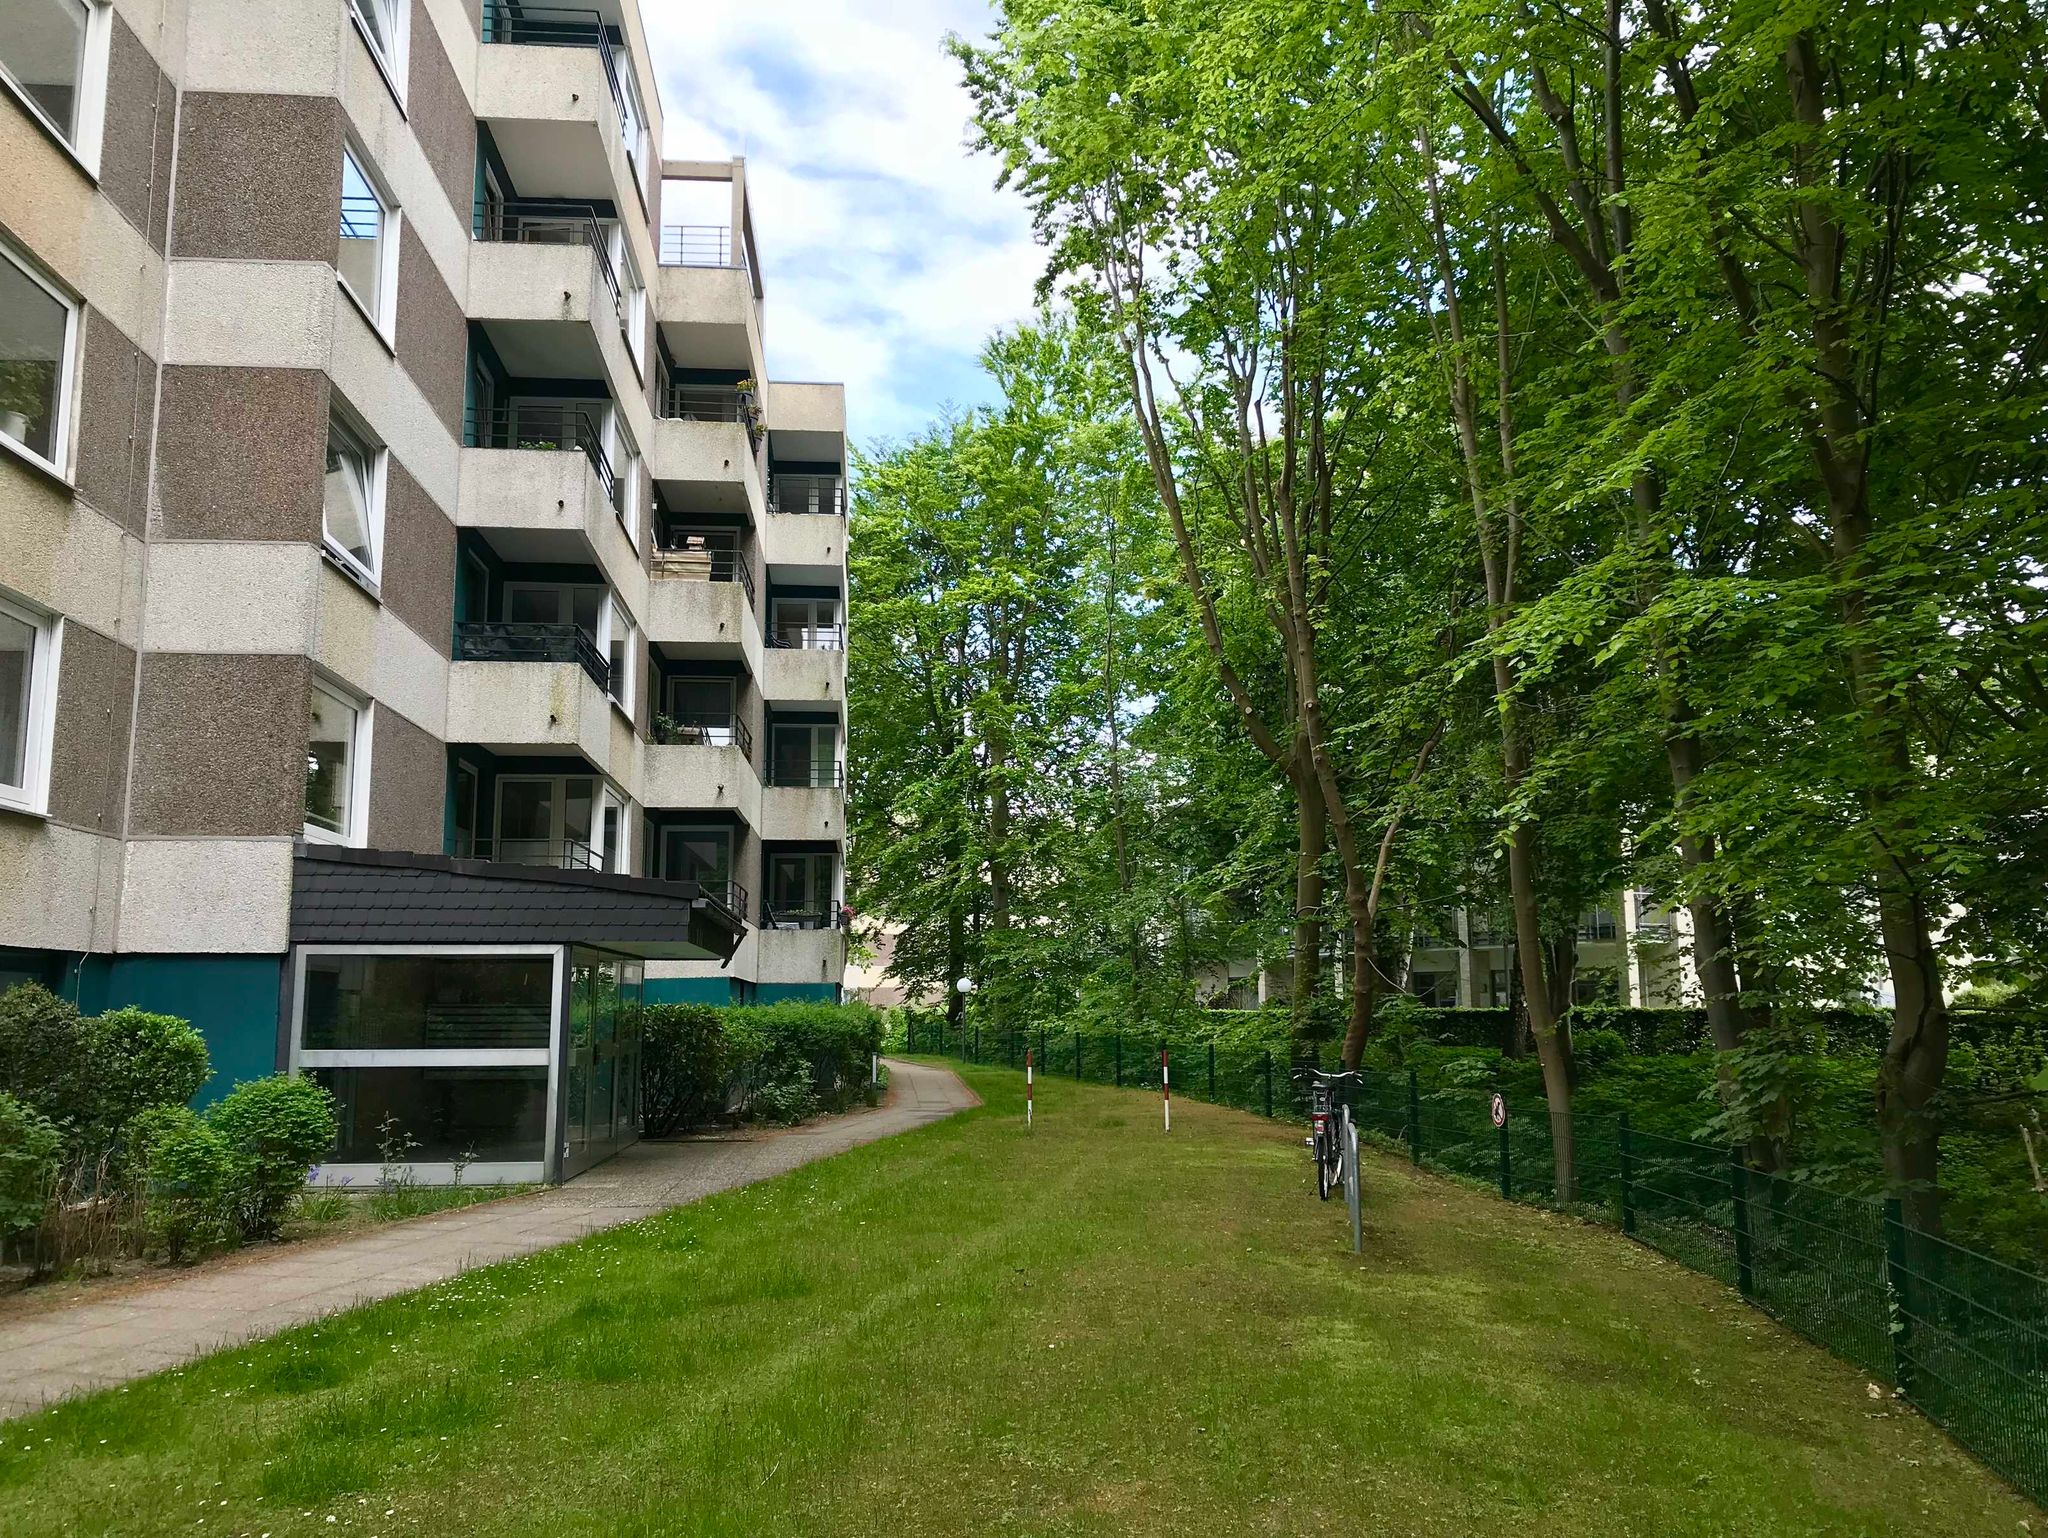 Dachgarten-Wohnung Heikendorf